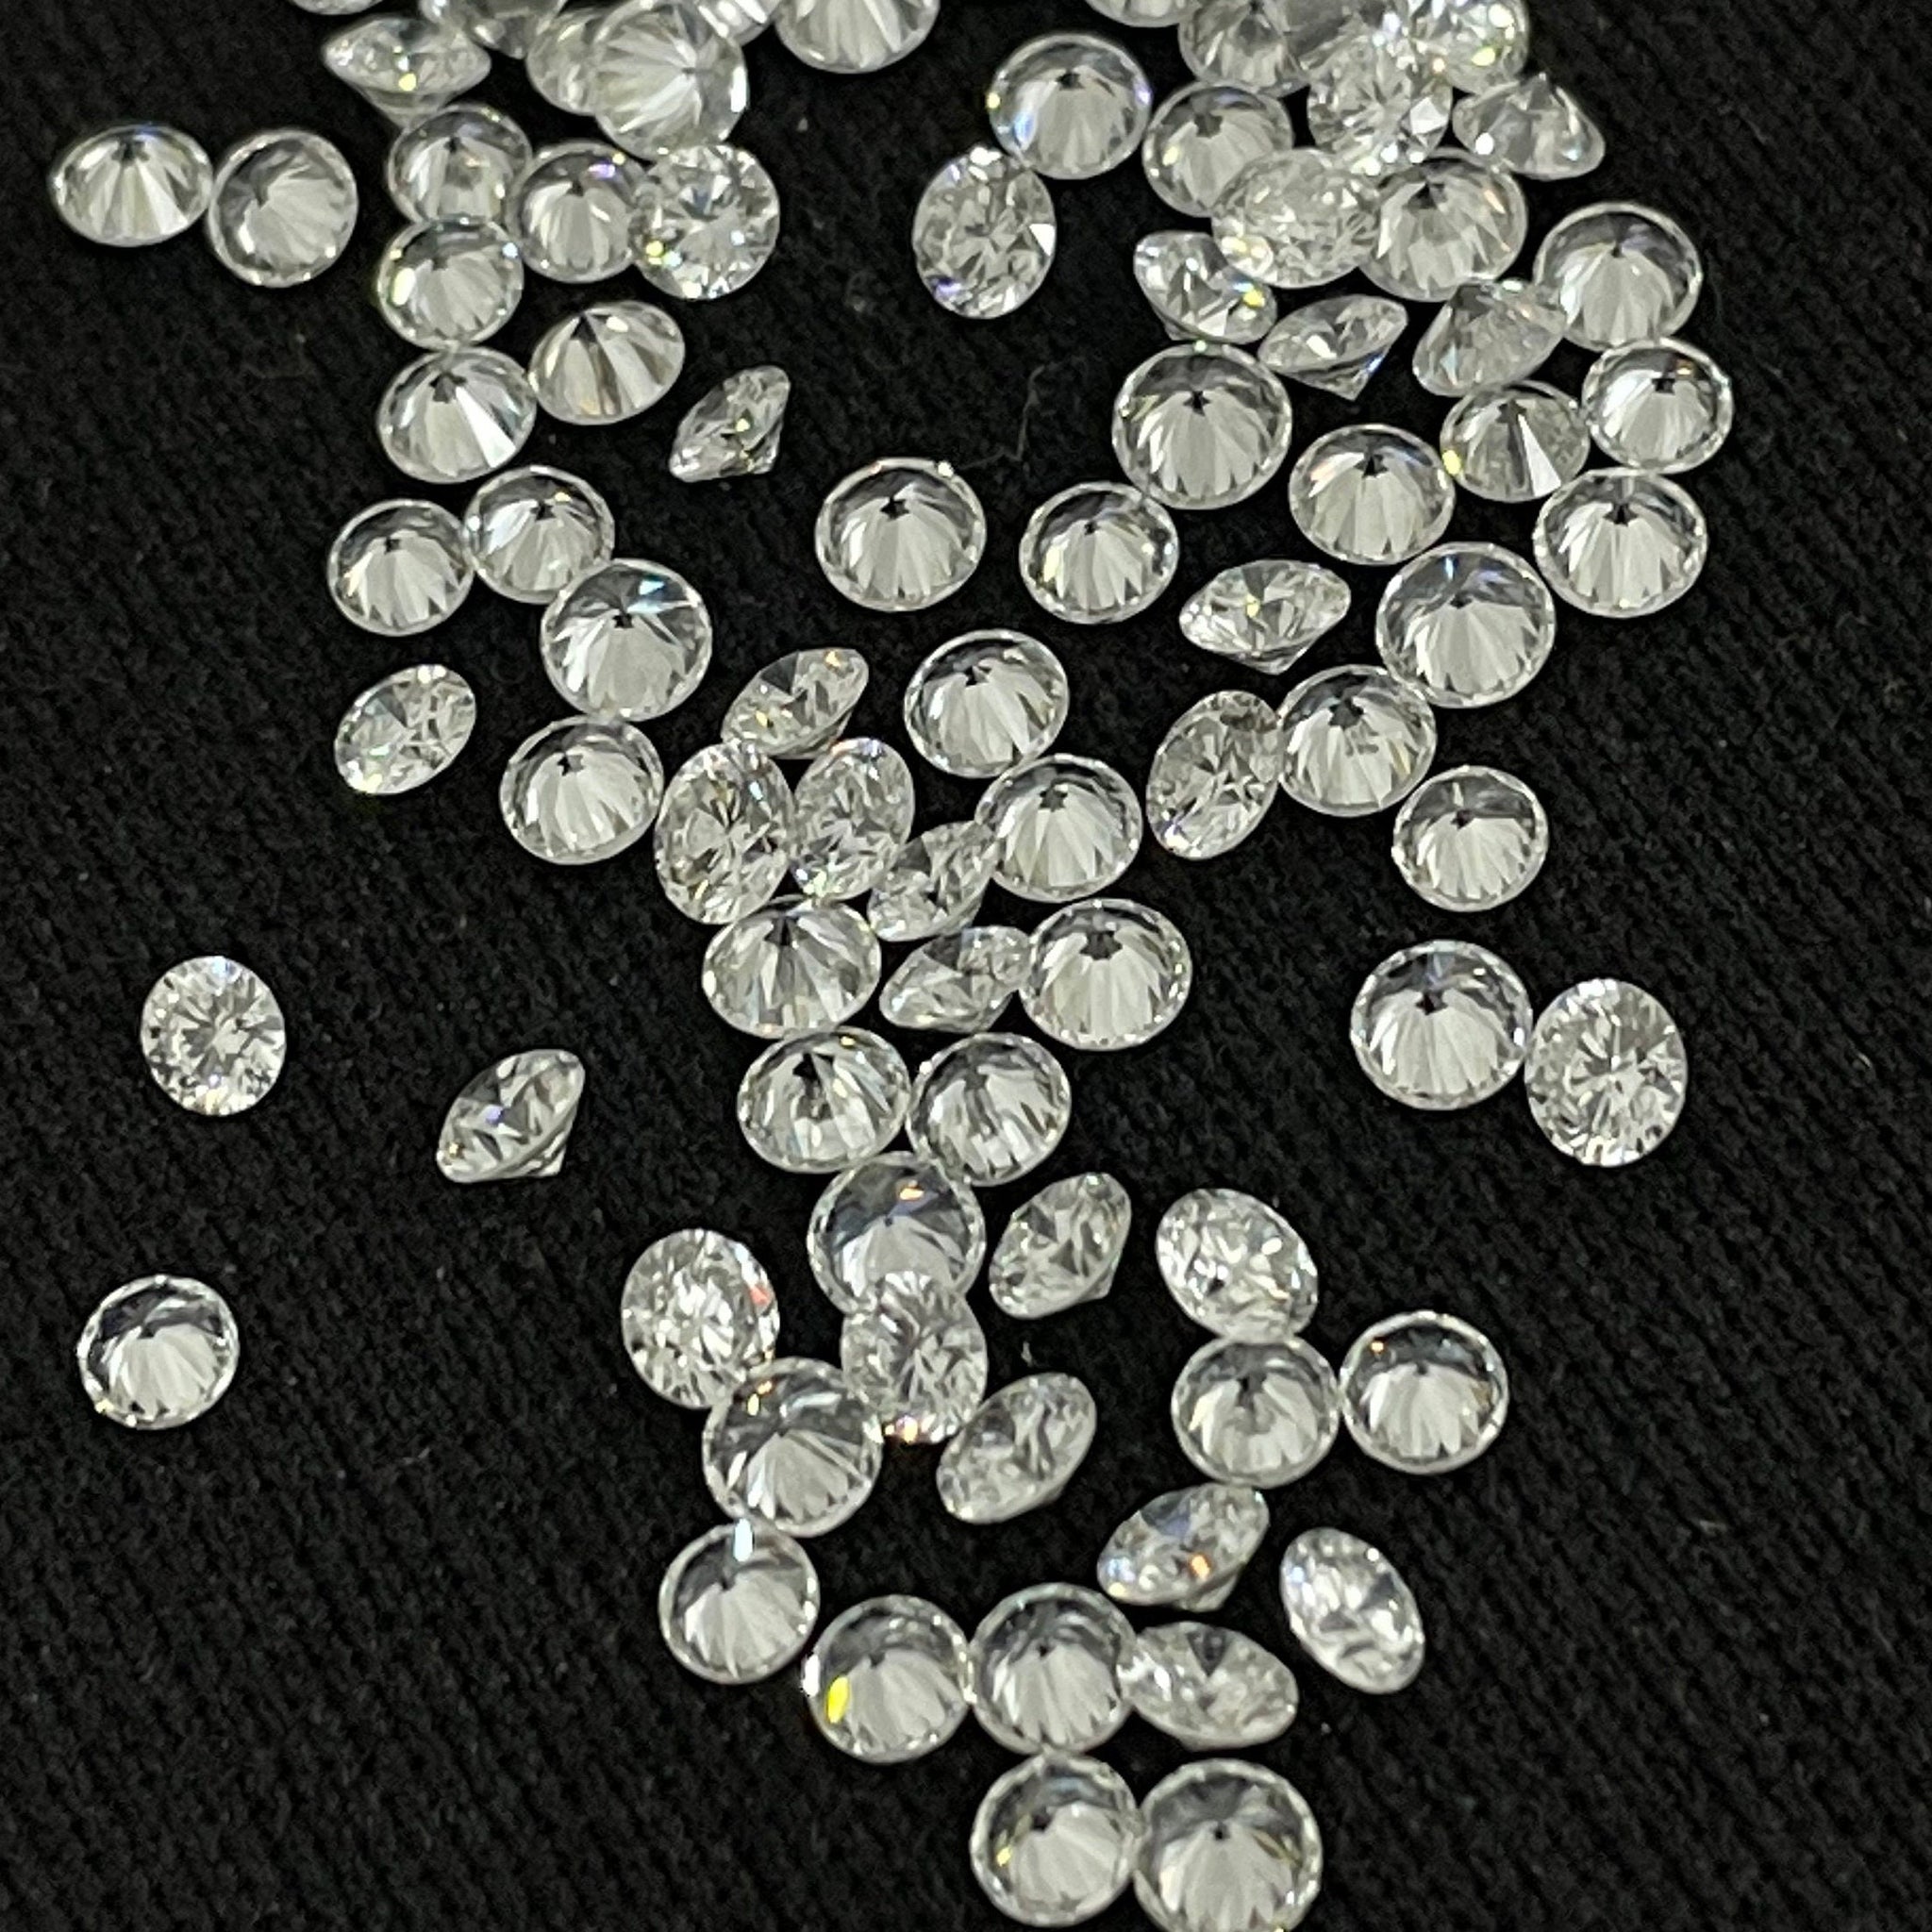 Diamant HPHT de 2,5 mm à 3,00 mm, diamant de laboratoire de la meilleure qualité, diamant en vrac CVD de pureté VVS - VS avec couleur DE.